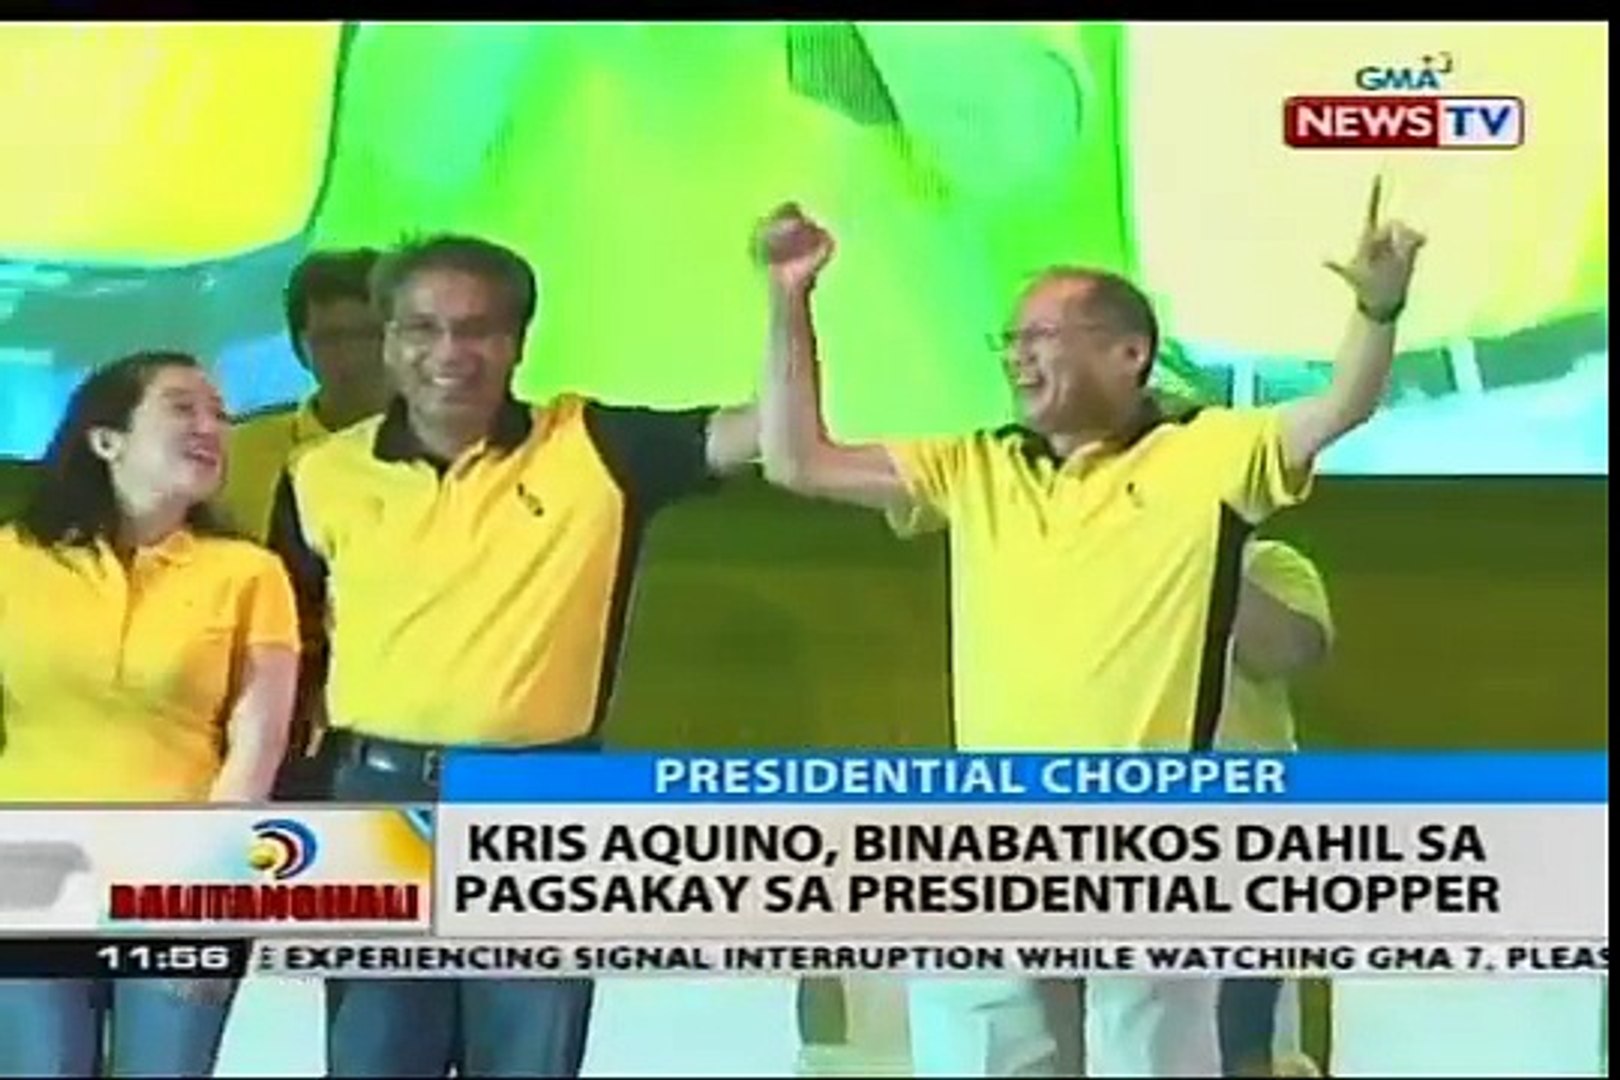 BT: Kris Aquino, binabatikos dahil sa pagsakay sa presidential chopper